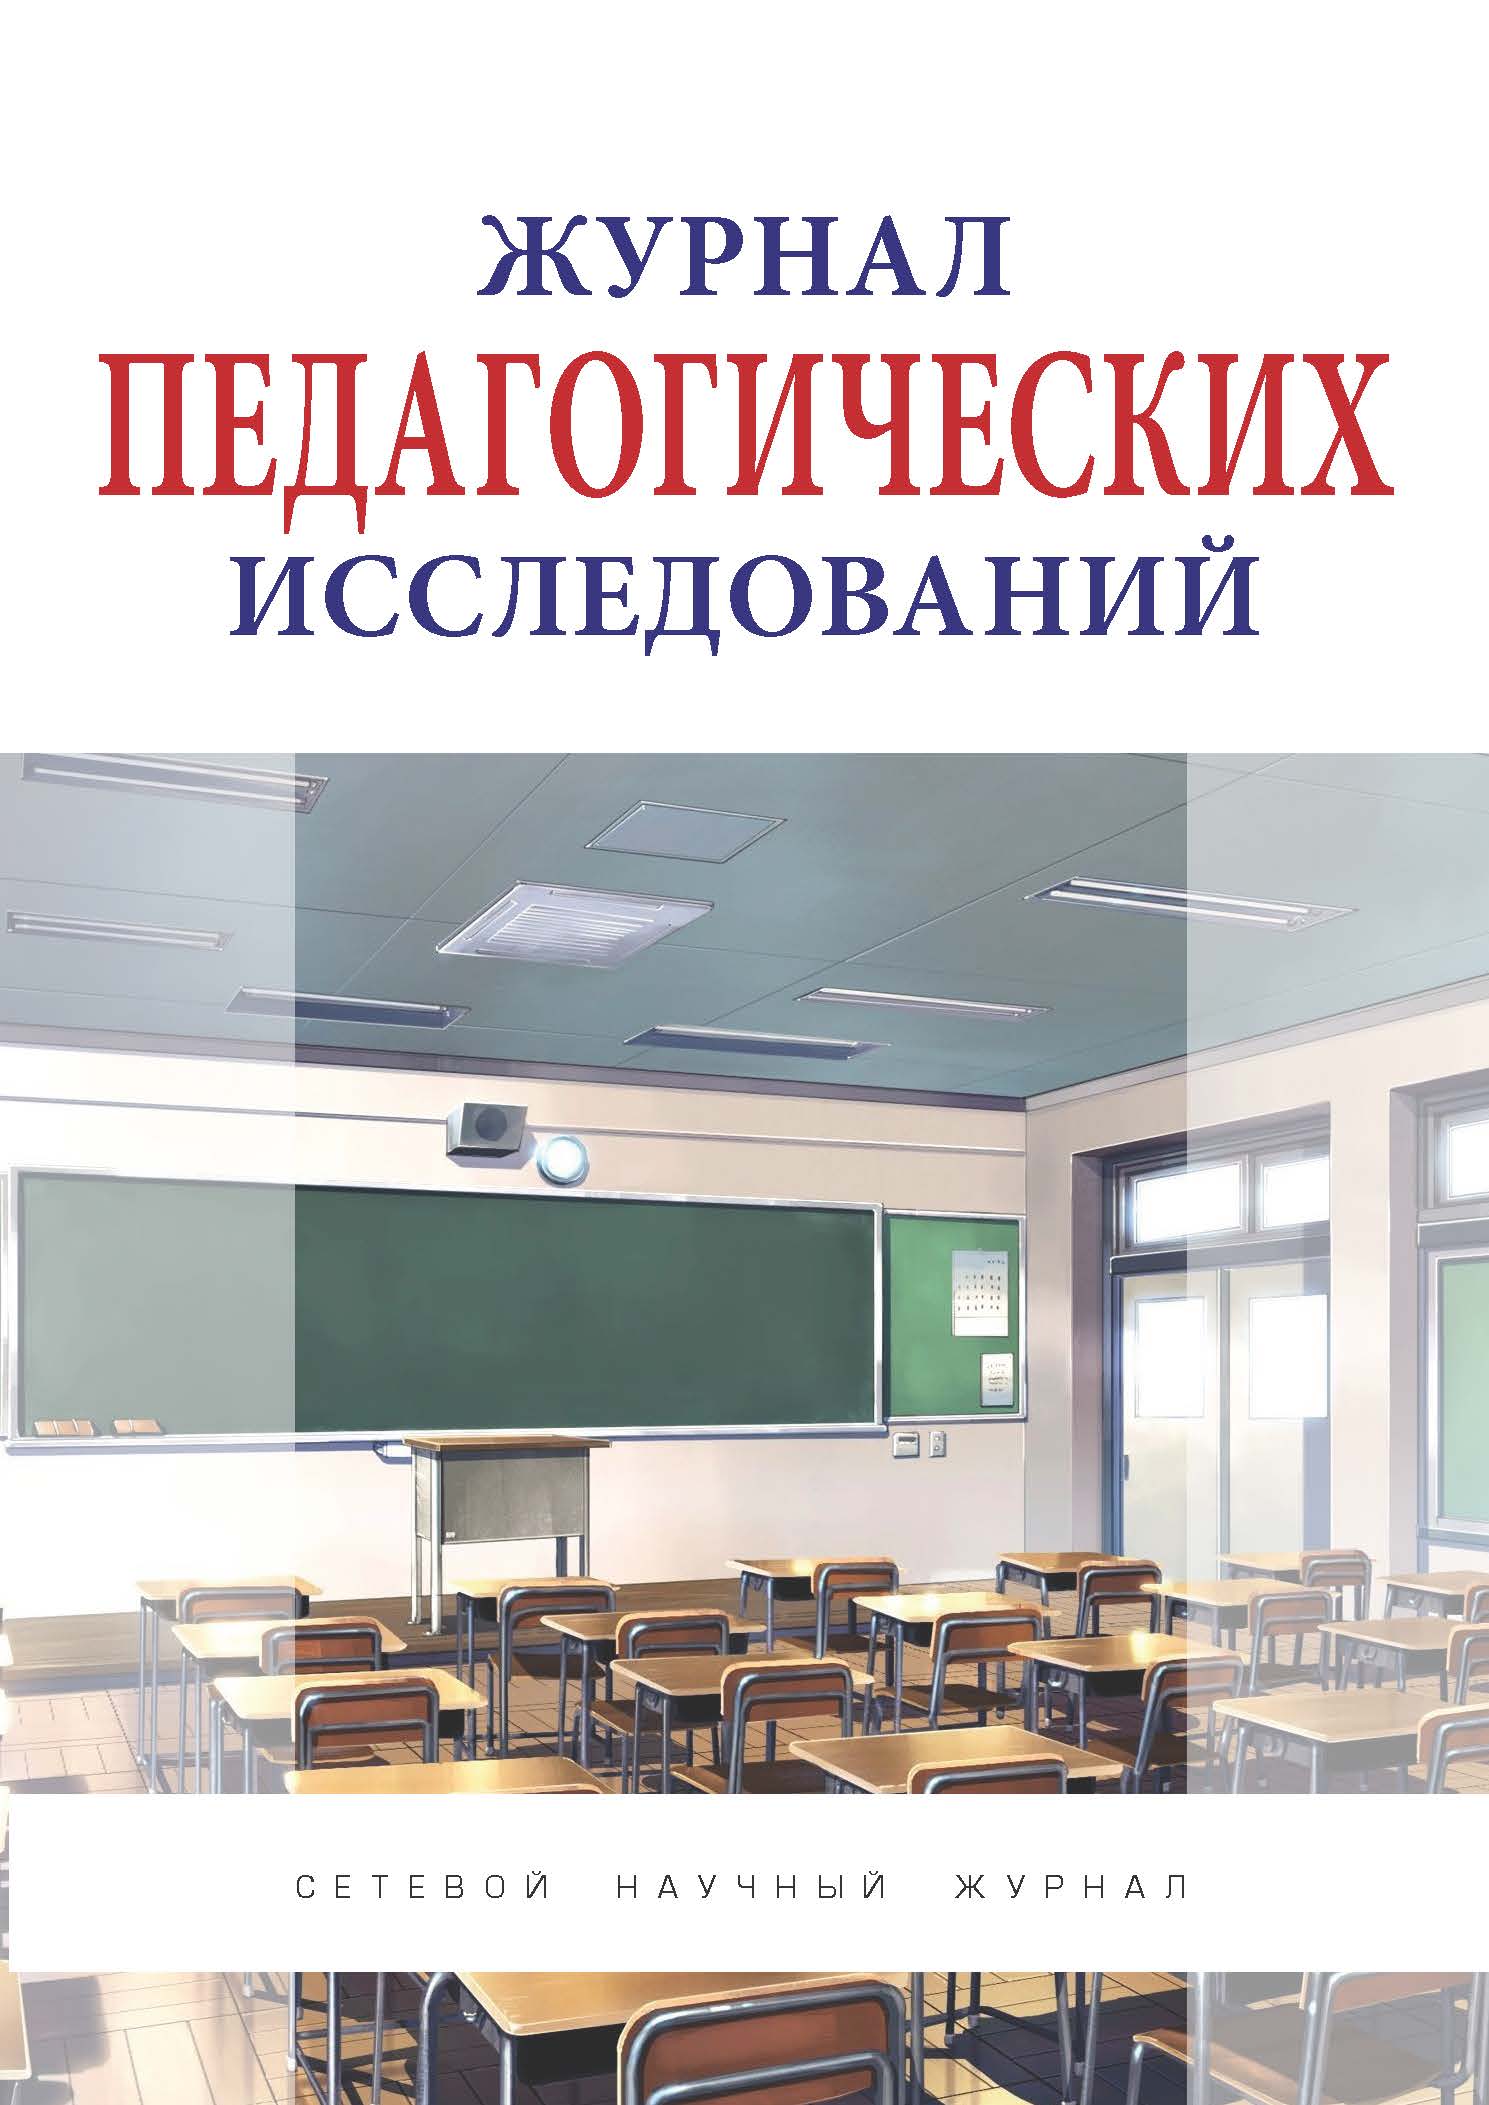             Этапы инклюзивного образования лиц с ограниченными возможностями здоровья: российский опыт
    